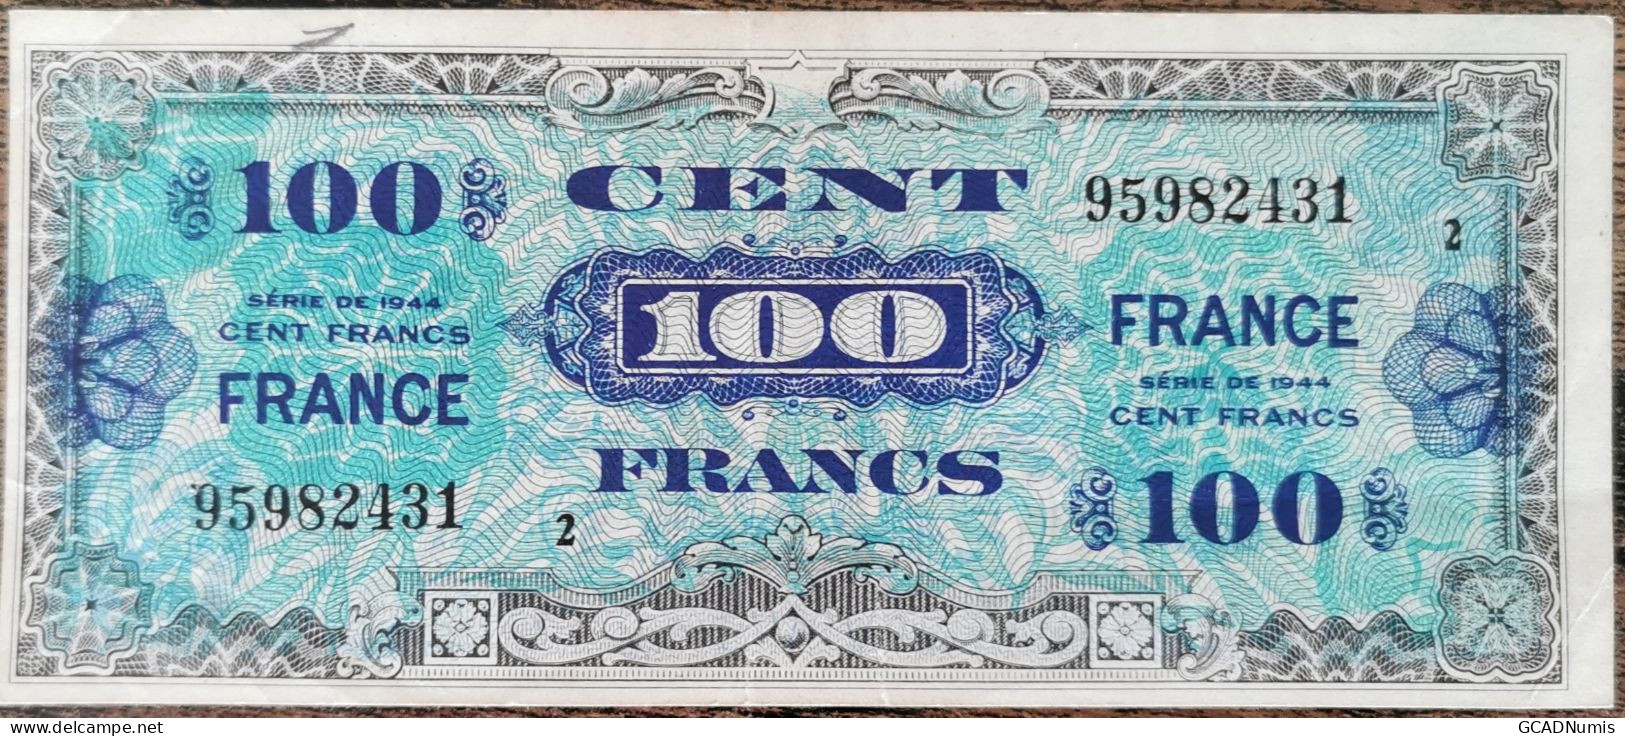 Billet 100 Francs 1944 FRANCE Préparer Par Les USA Pour La Libération Série 2 - 1944 Vlag/Frankrijk